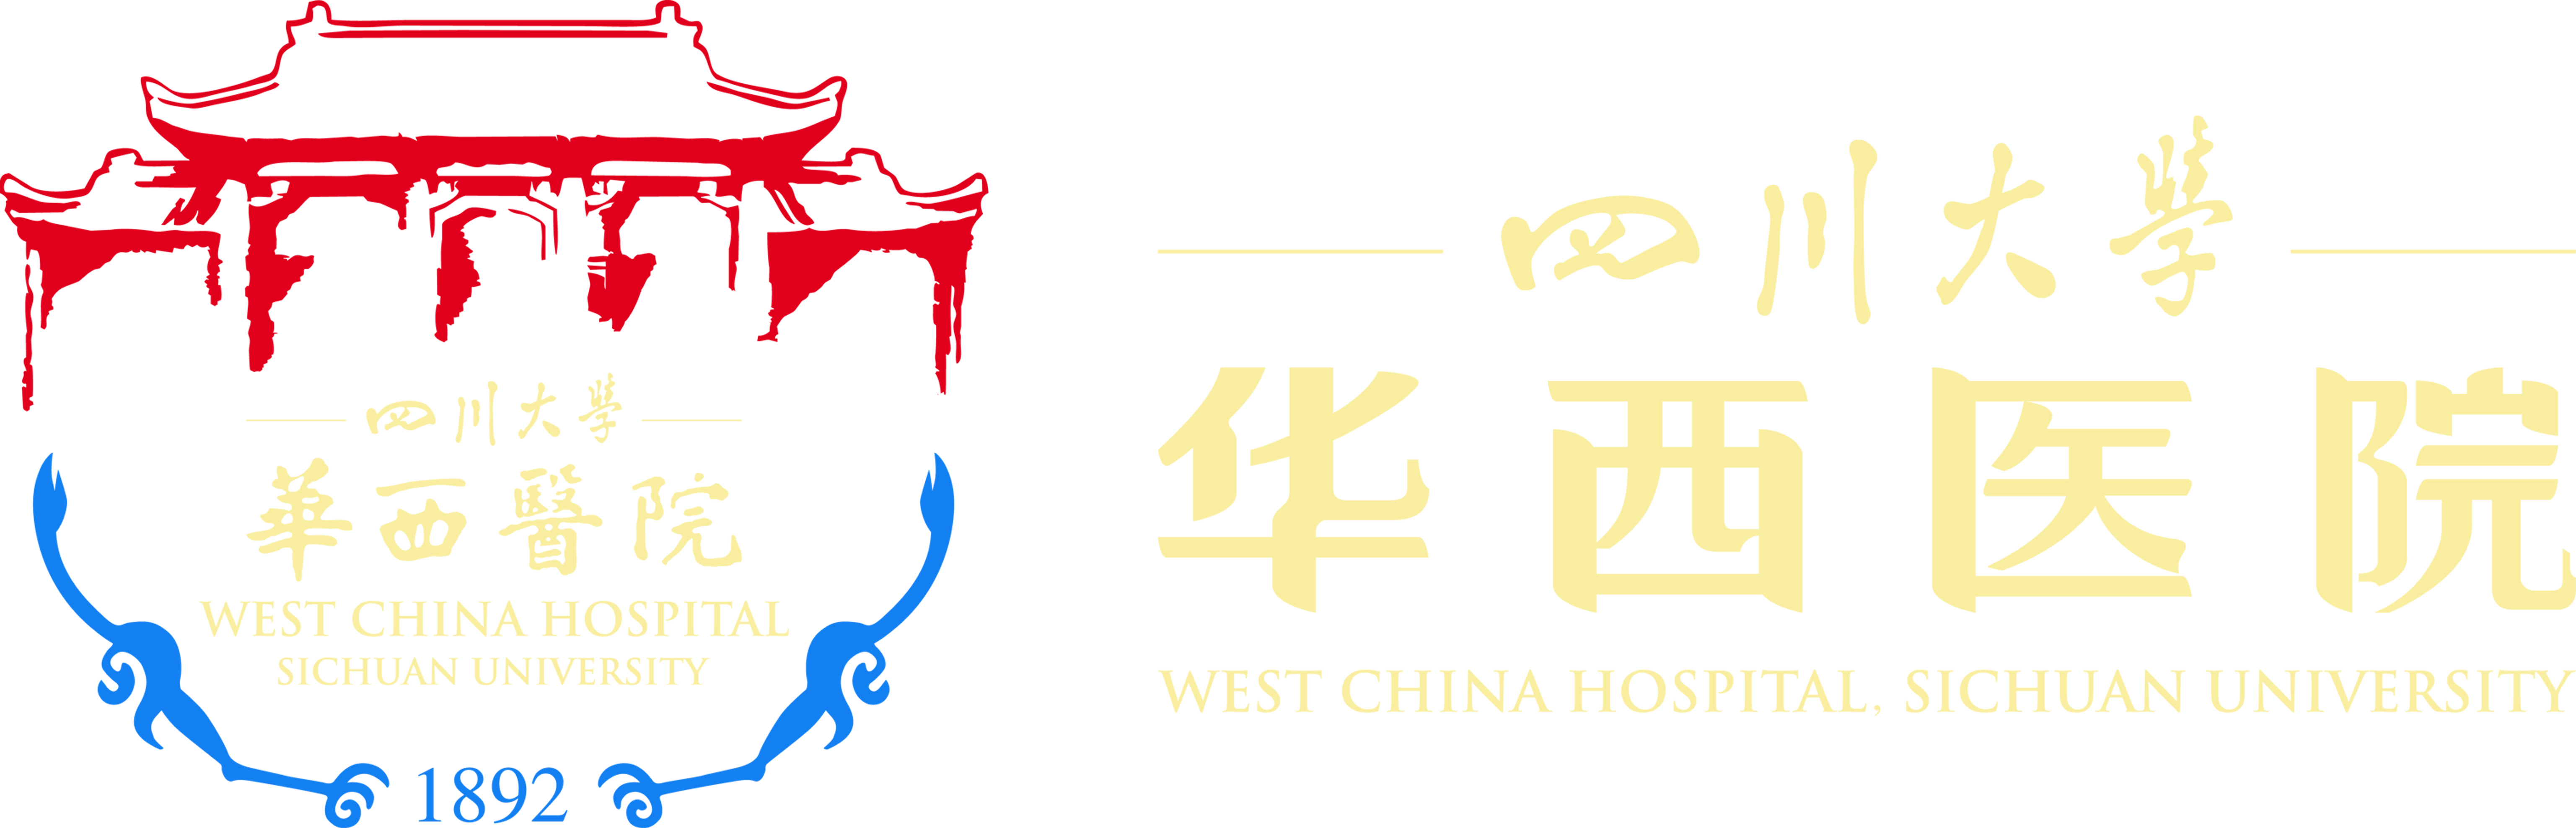 West China Hospital